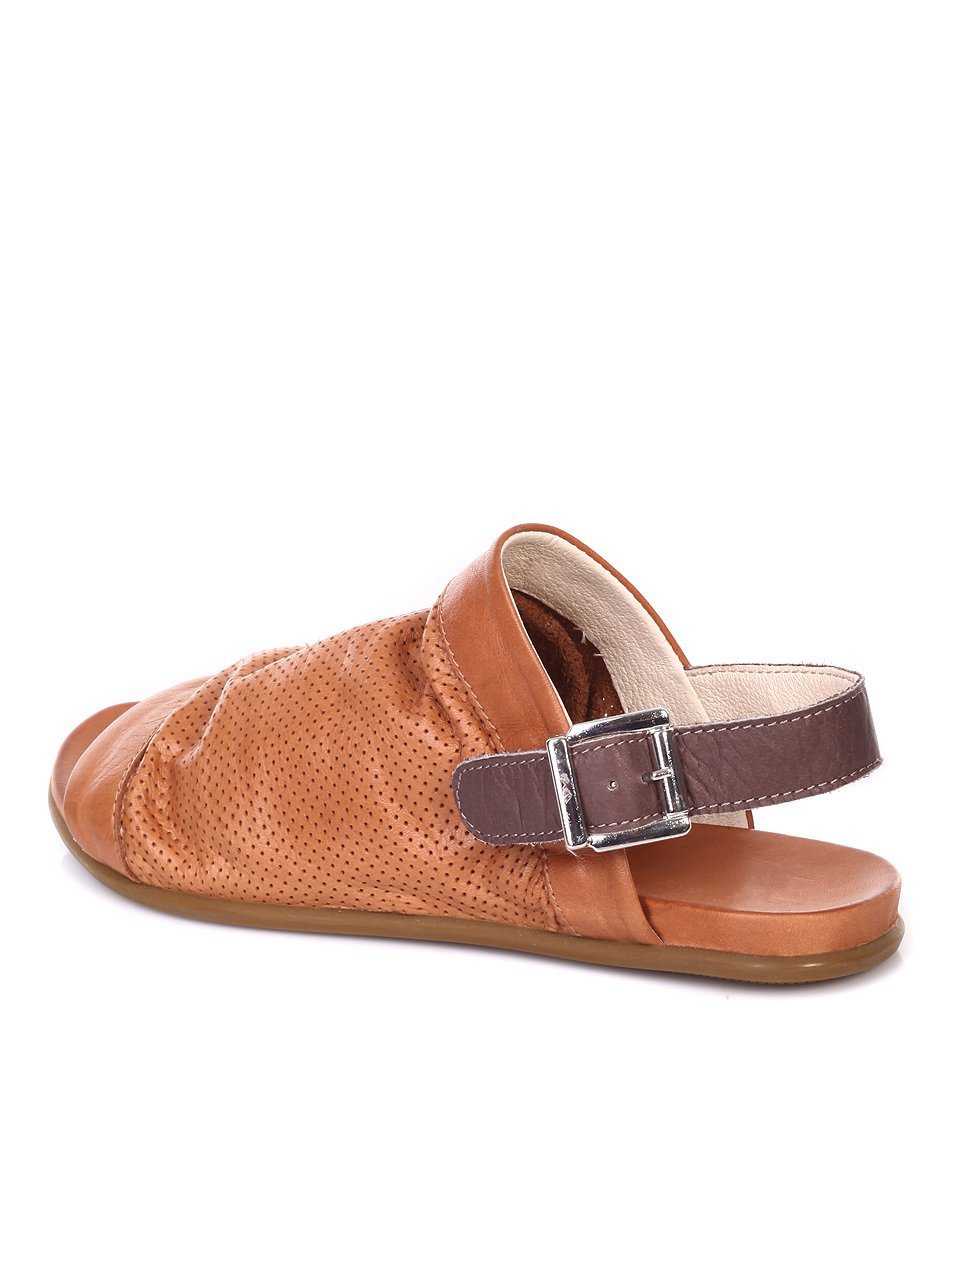 Ежедневни дамски сандали от естествена кожа 564-3282 brown